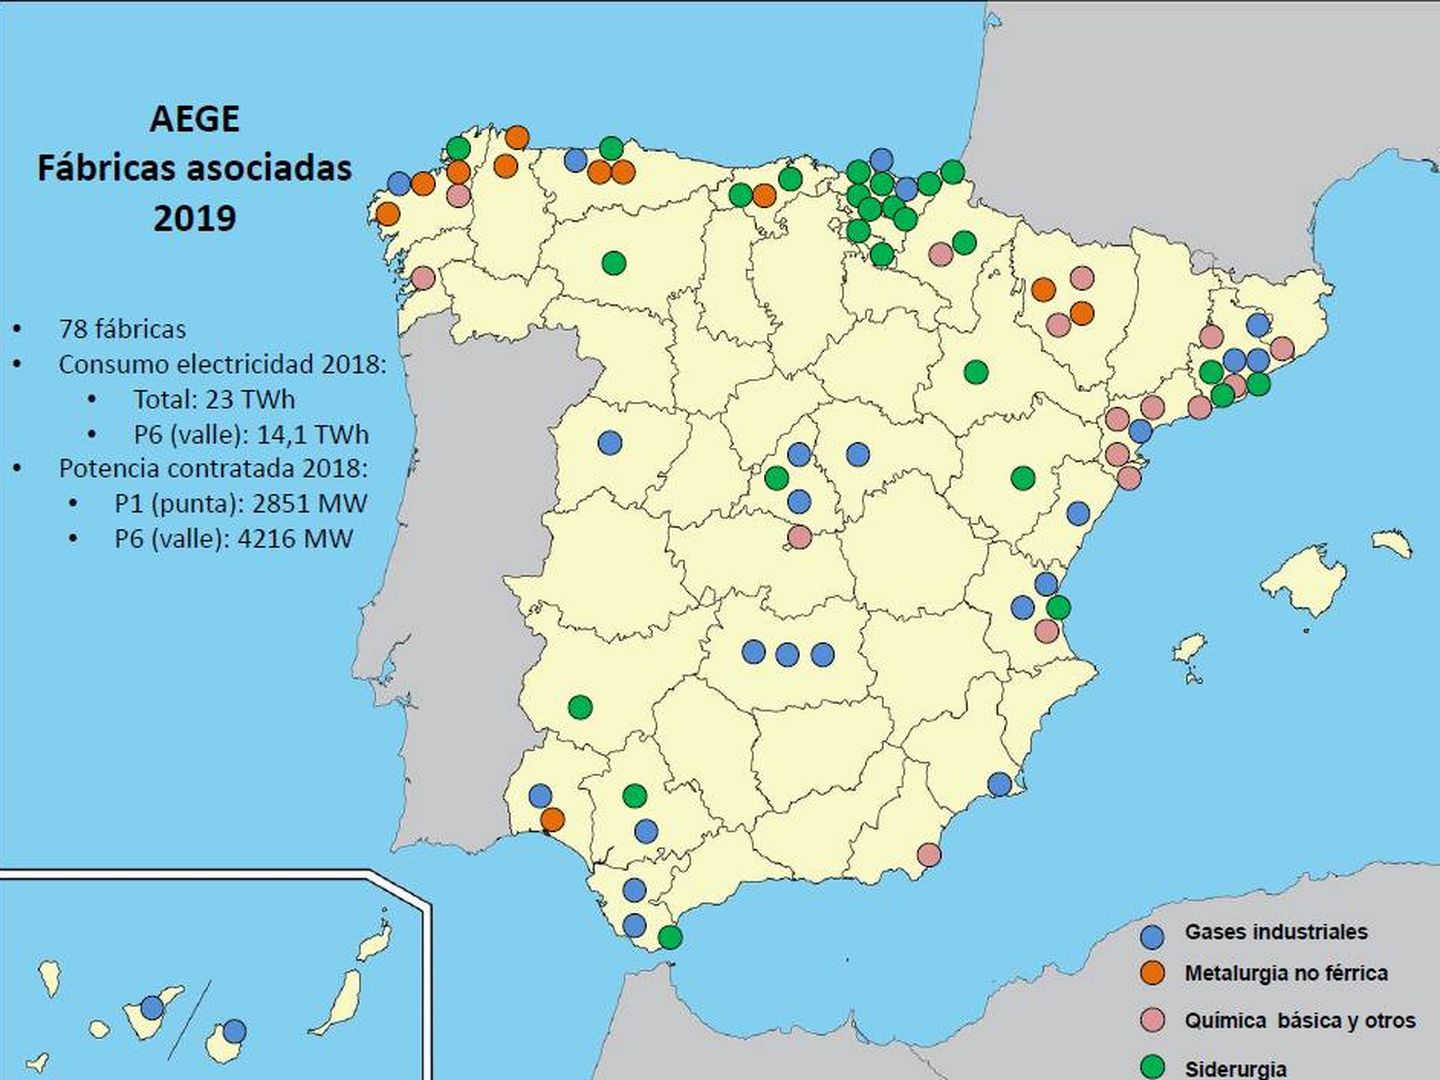 Mapa de la industria electrointensiva, concentrada en Cataluña y Norte de España. (Fuente: Aege)